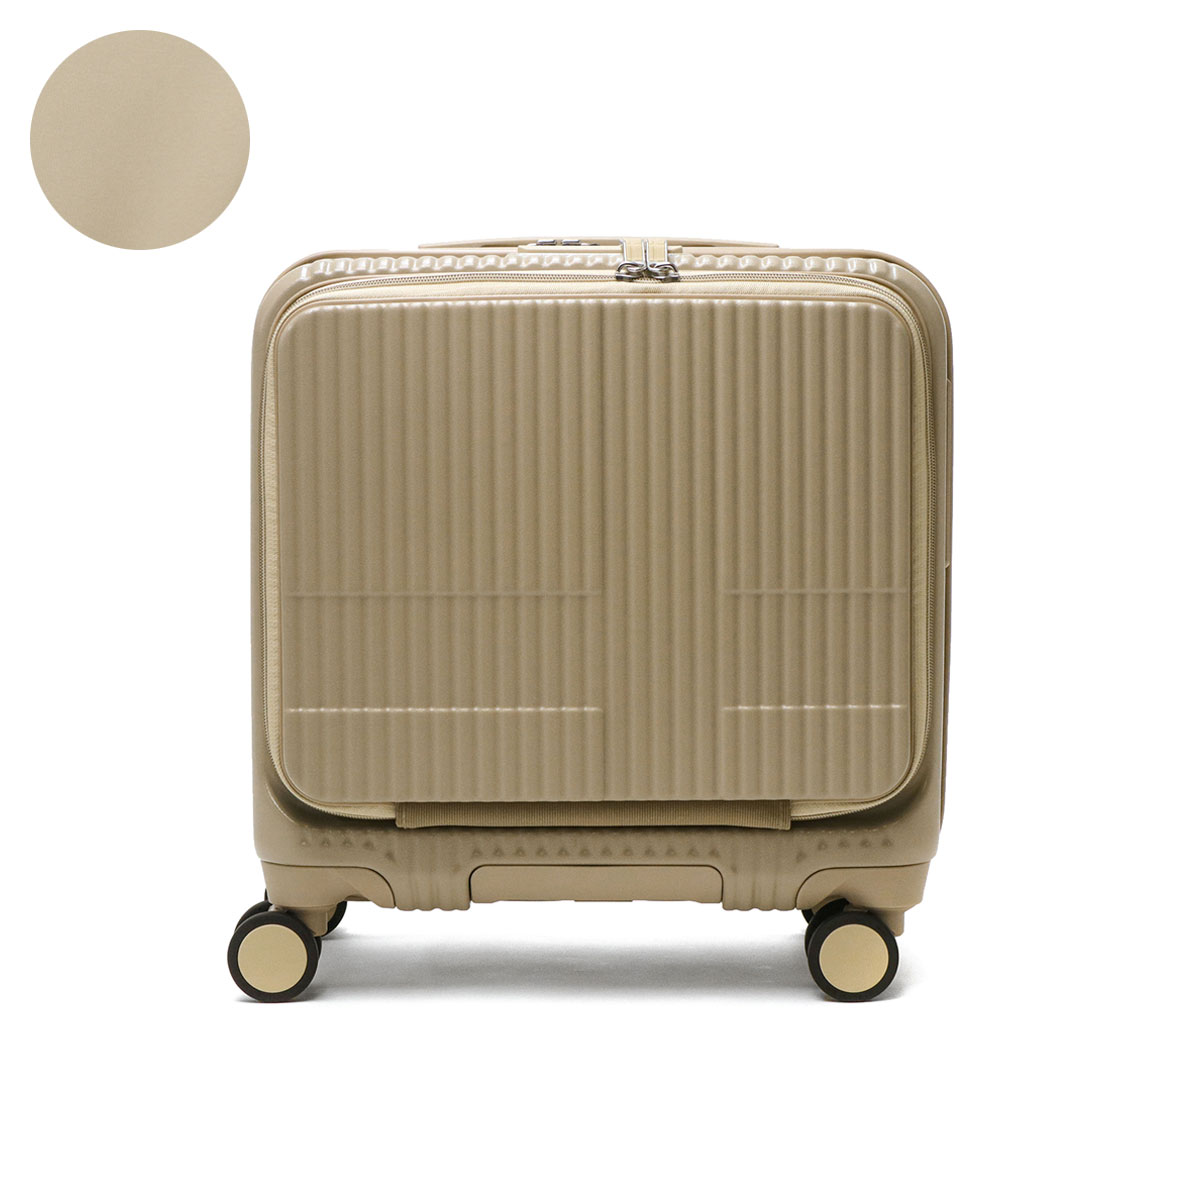 正規品2年保証 イノベーター スーツケース 機内持ち込み Sサイズ innovator 軽量 キャリ...